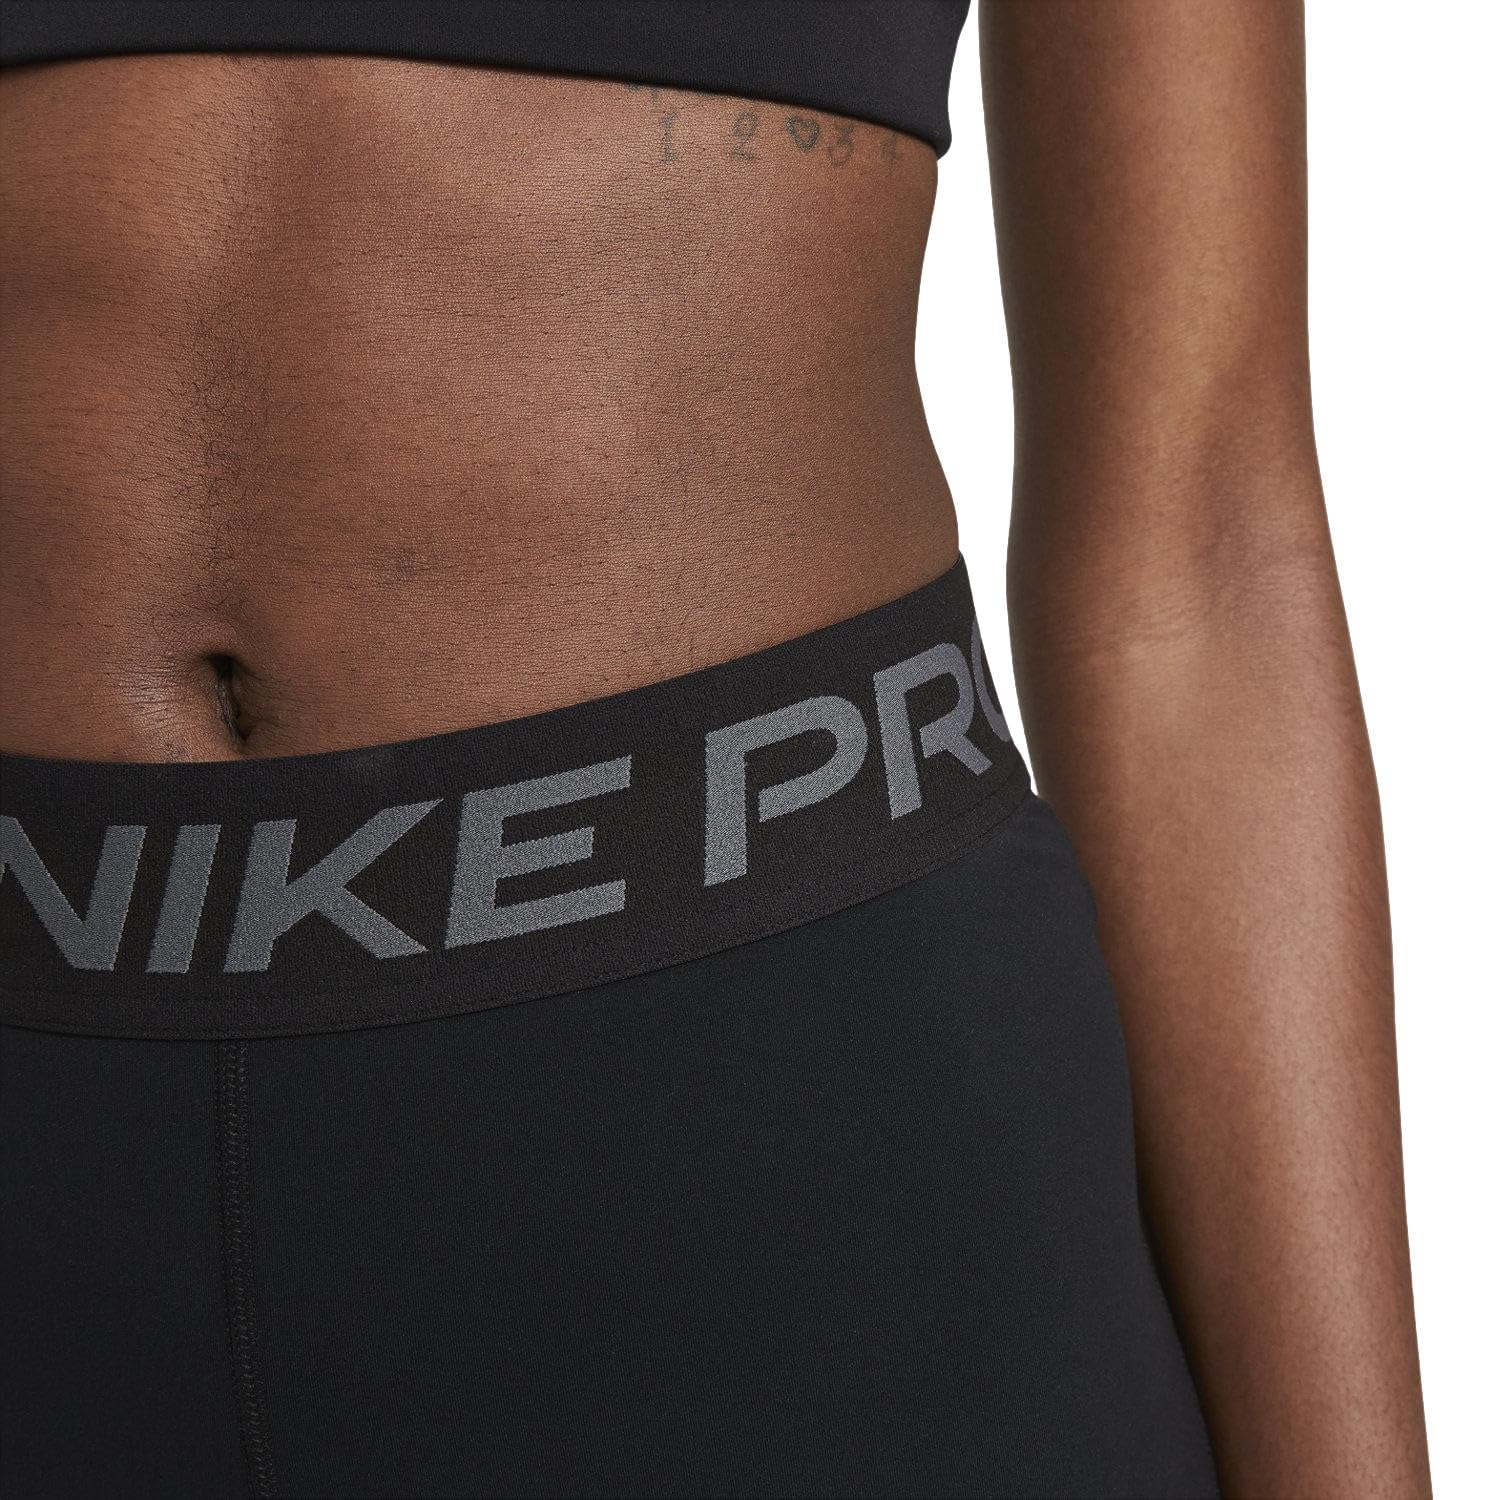 Nike Women's Pro 3